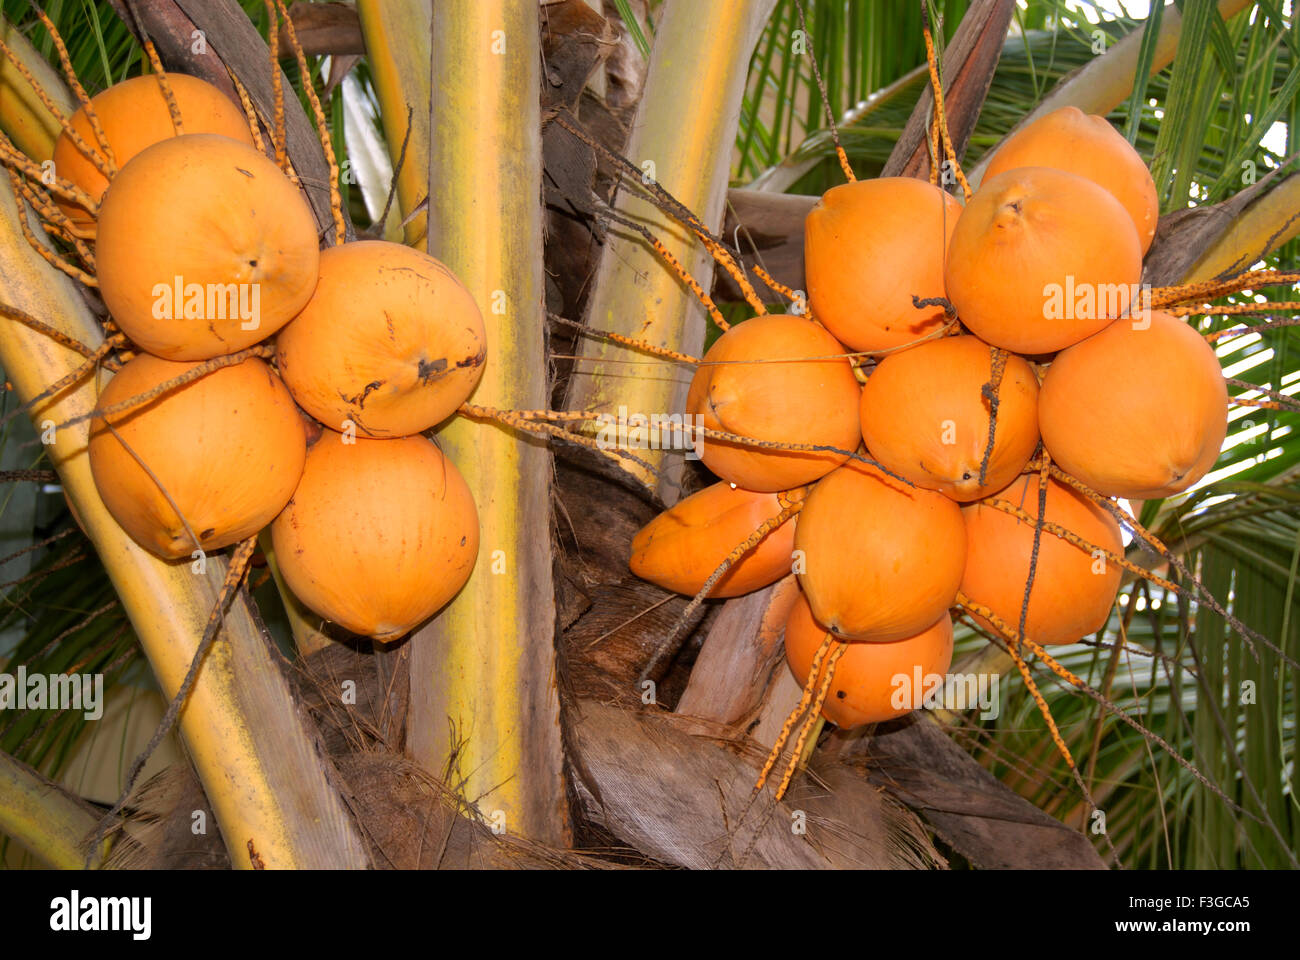 Chandan cocos principales de Pooja y beber solo Foto de stock